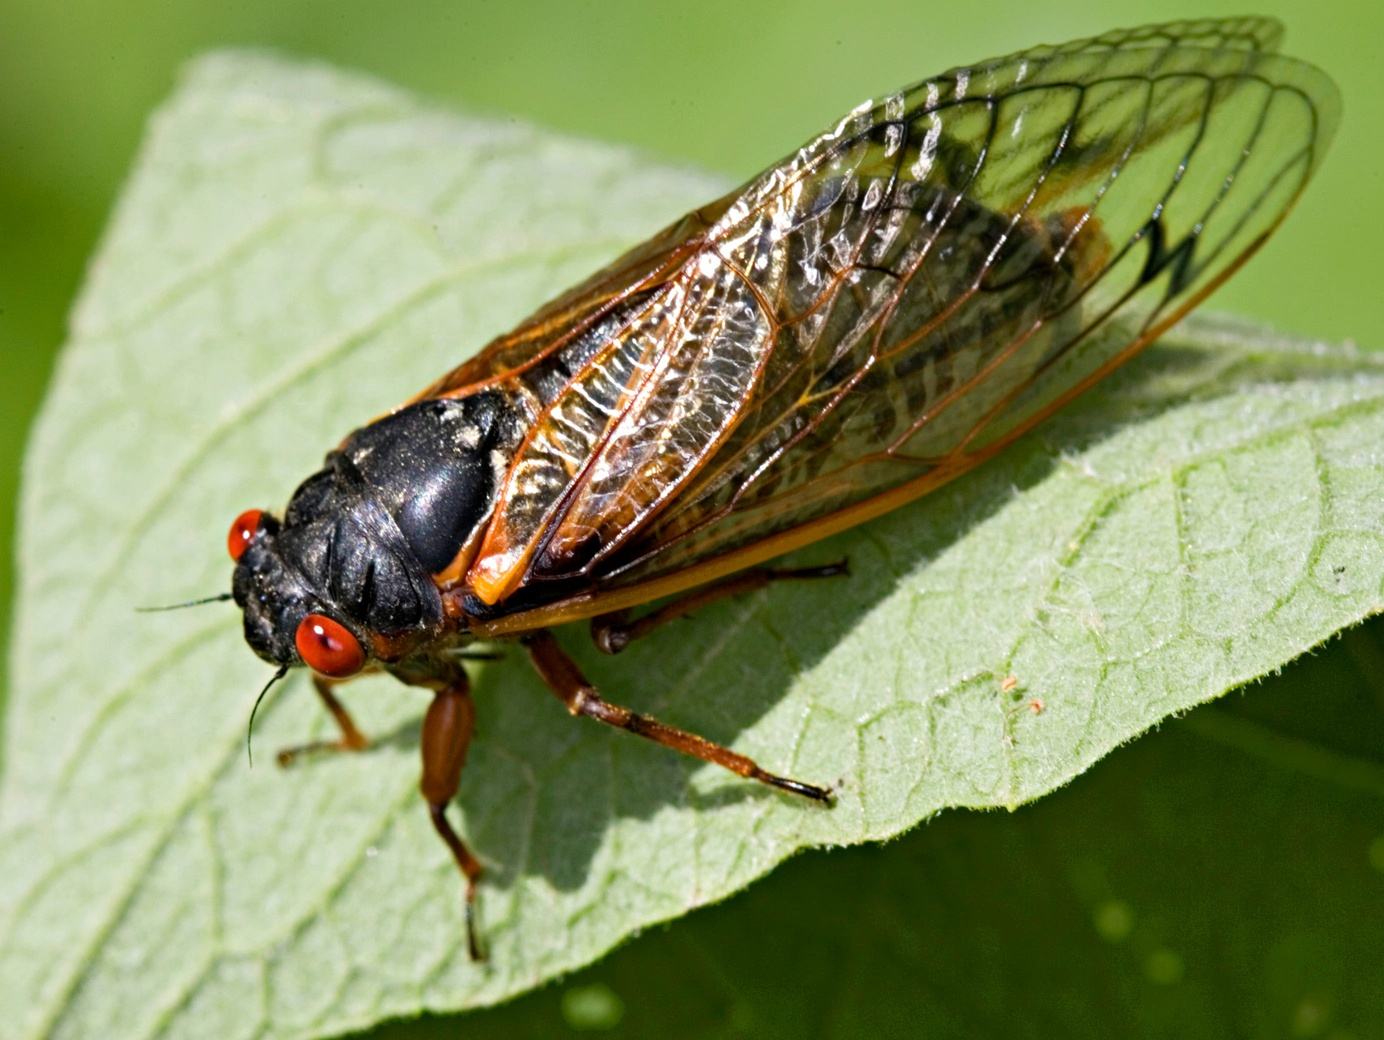 Bugs Life: Cean the Cicada on the Steve Cochran Show